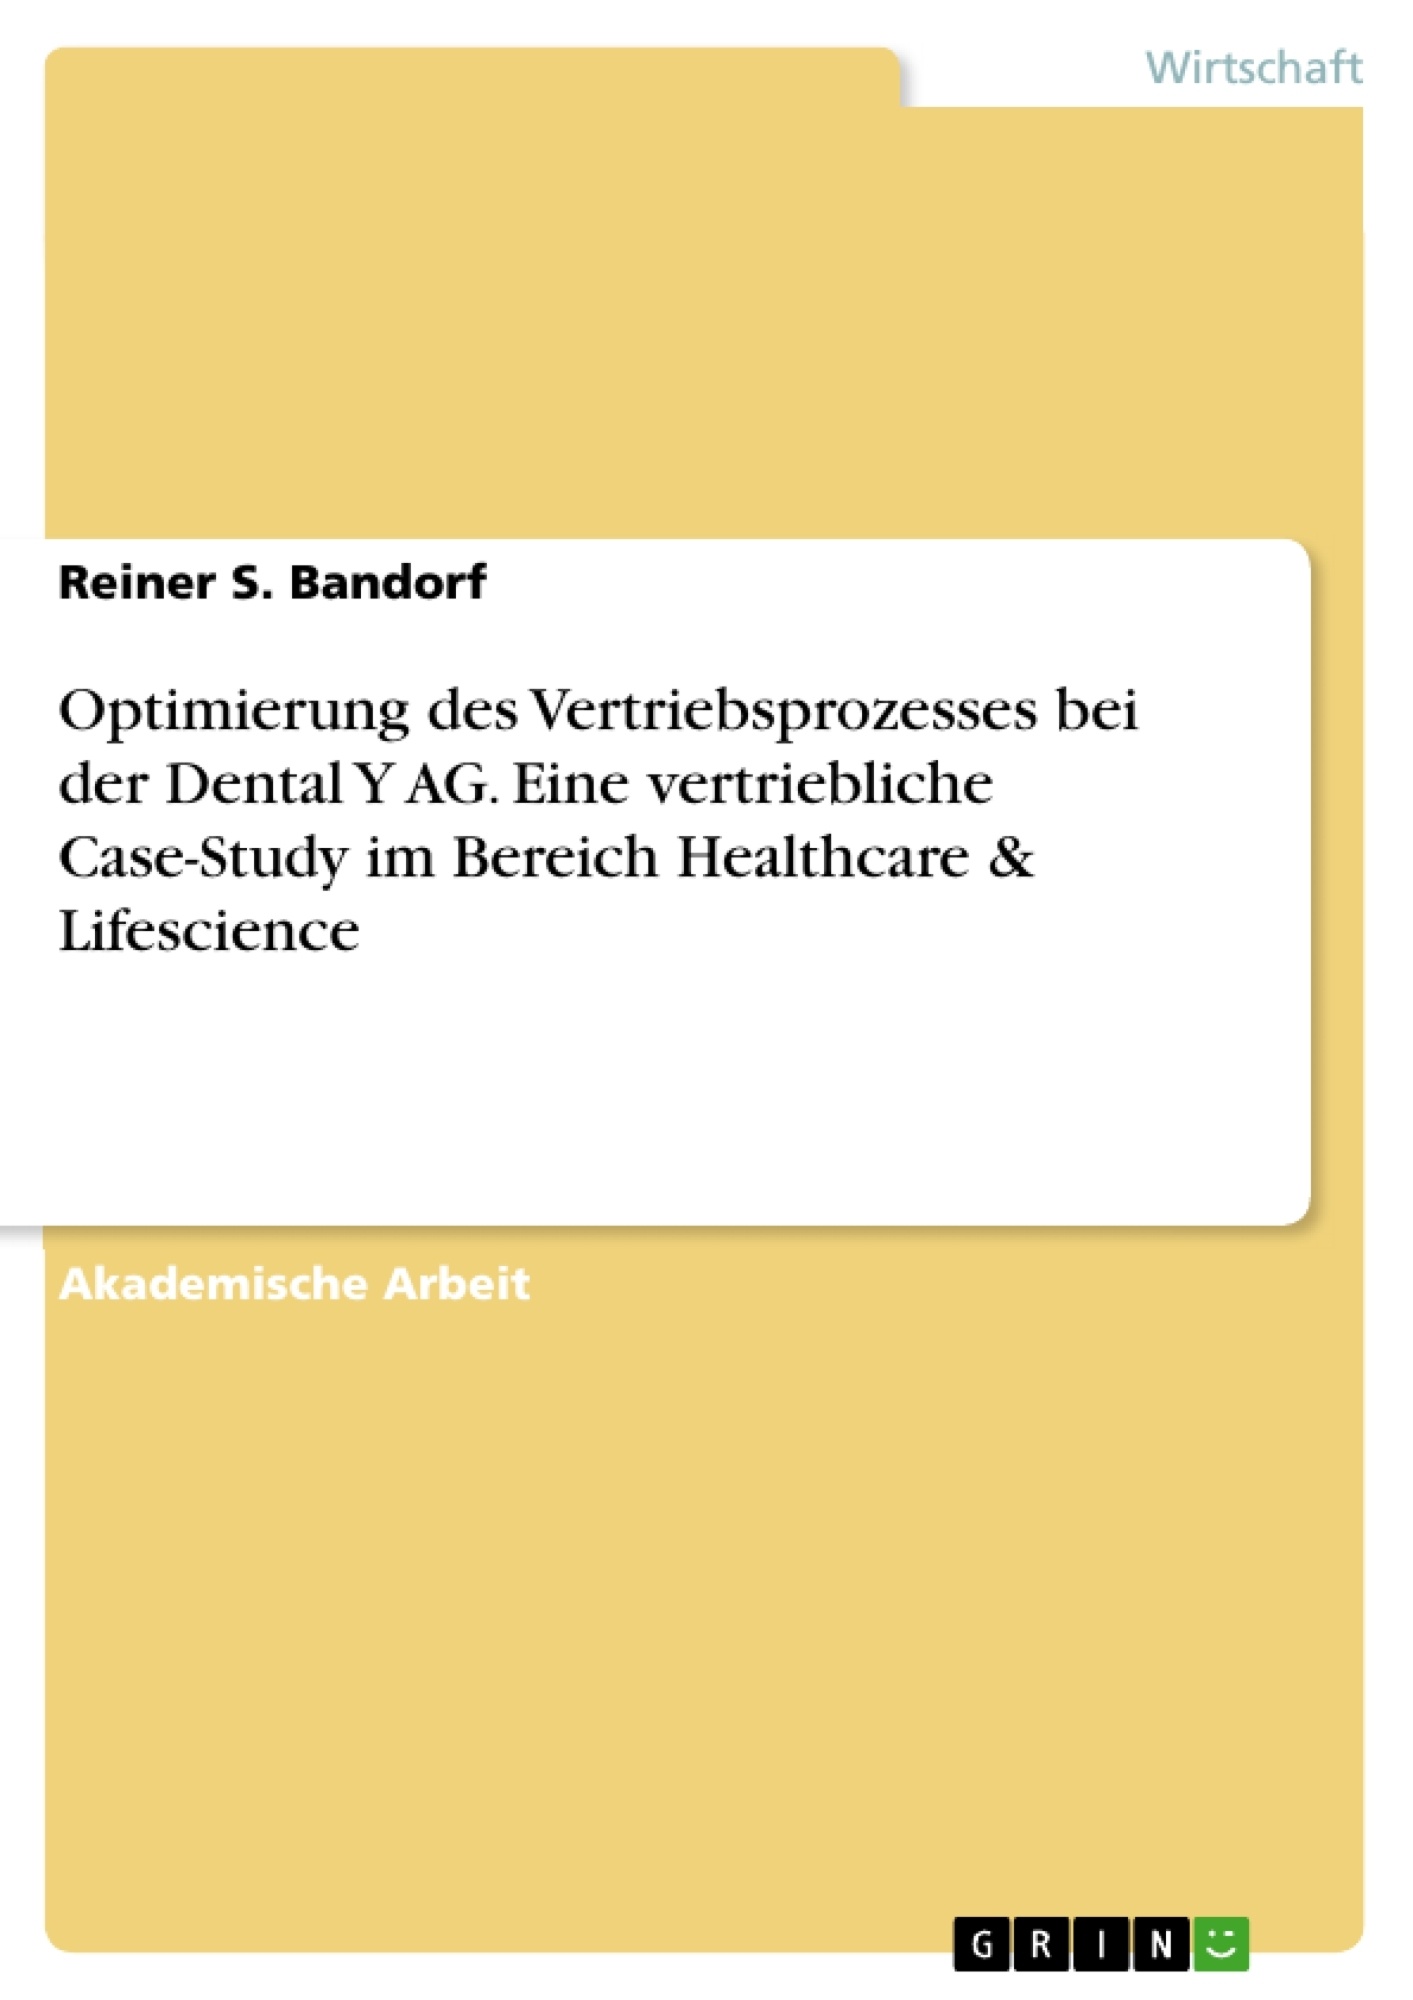 Buchcover_GRIN_Dental_Y_AG.jpg